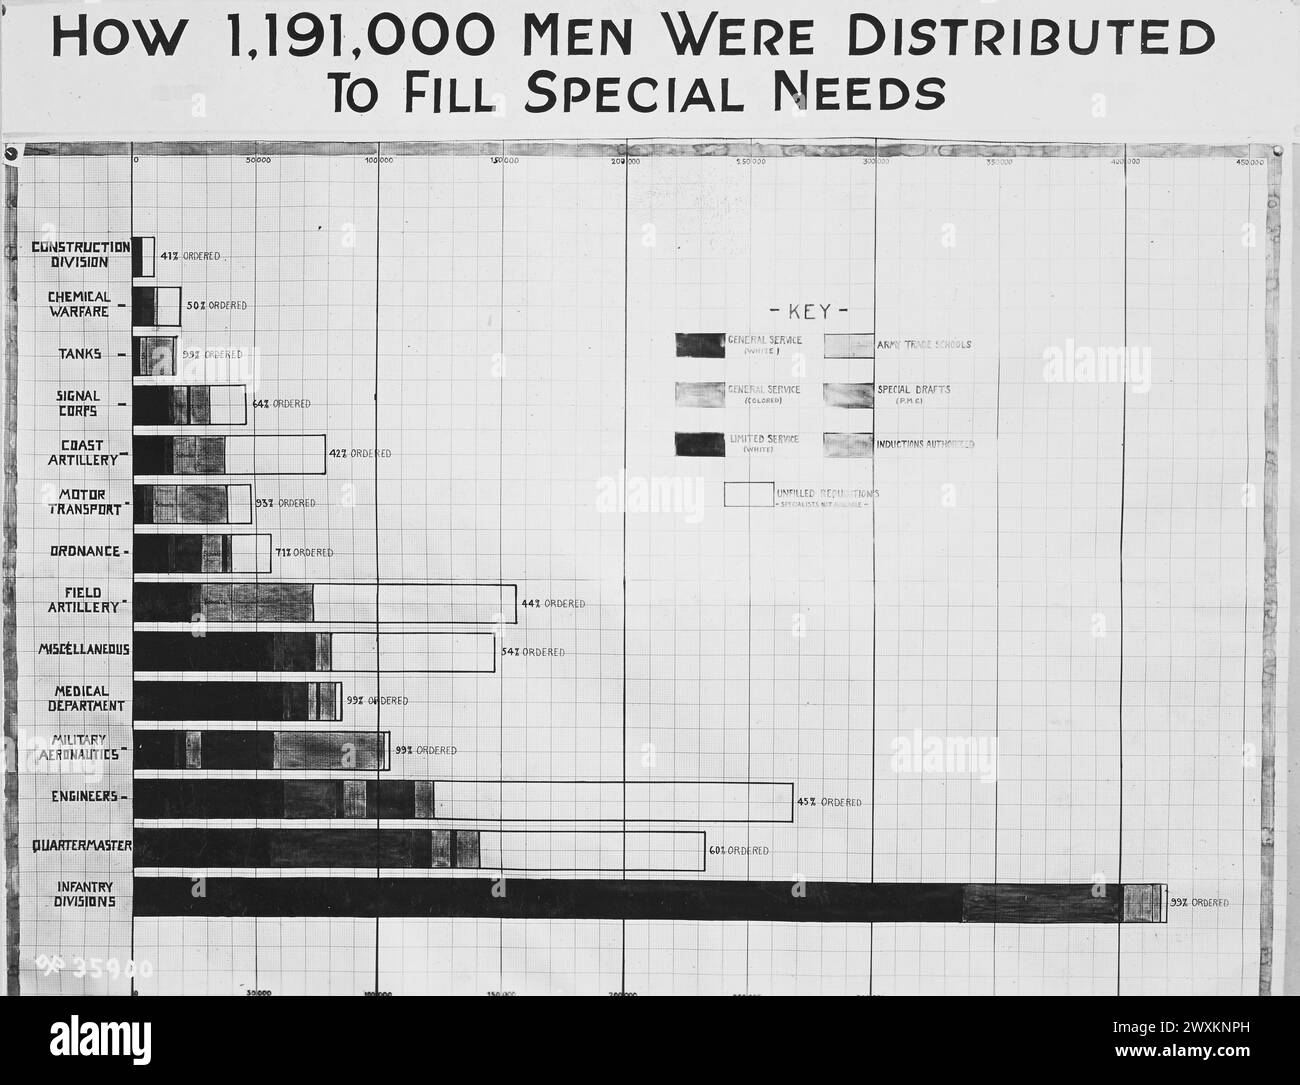 Waffenausstellung mit Effizienzdiagrammen, die die Arbeit der Armeeabteilung zeigen - wie 1.191.000 Männer verteilt wurden, um besondere Bedürfnisse zu erfüllen. 1918-1919 Stockfoto